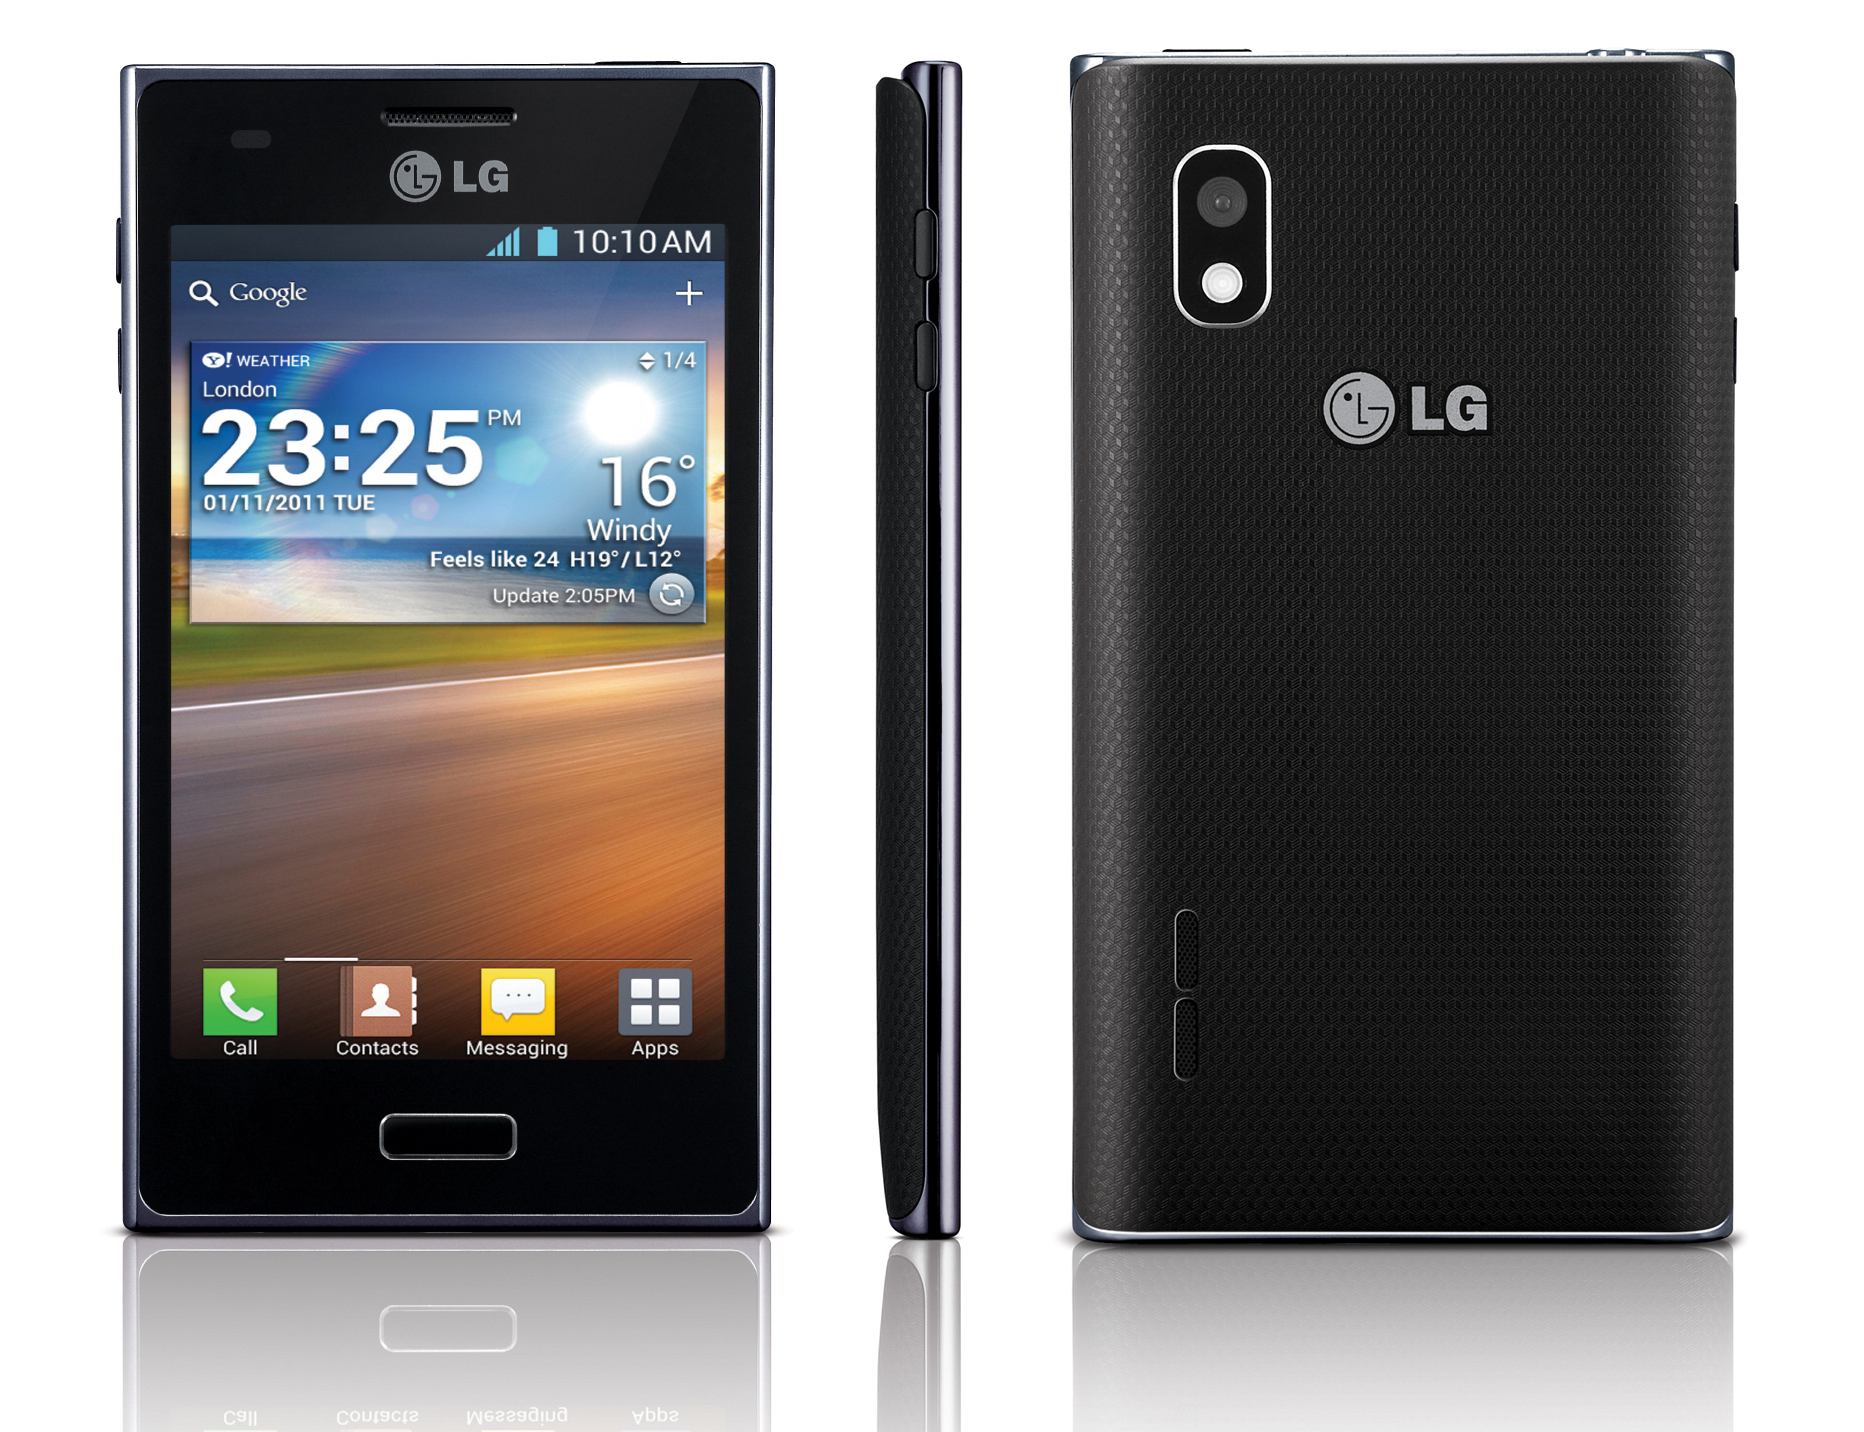 LG Optimus L5 hits Europe this month - SlashGear